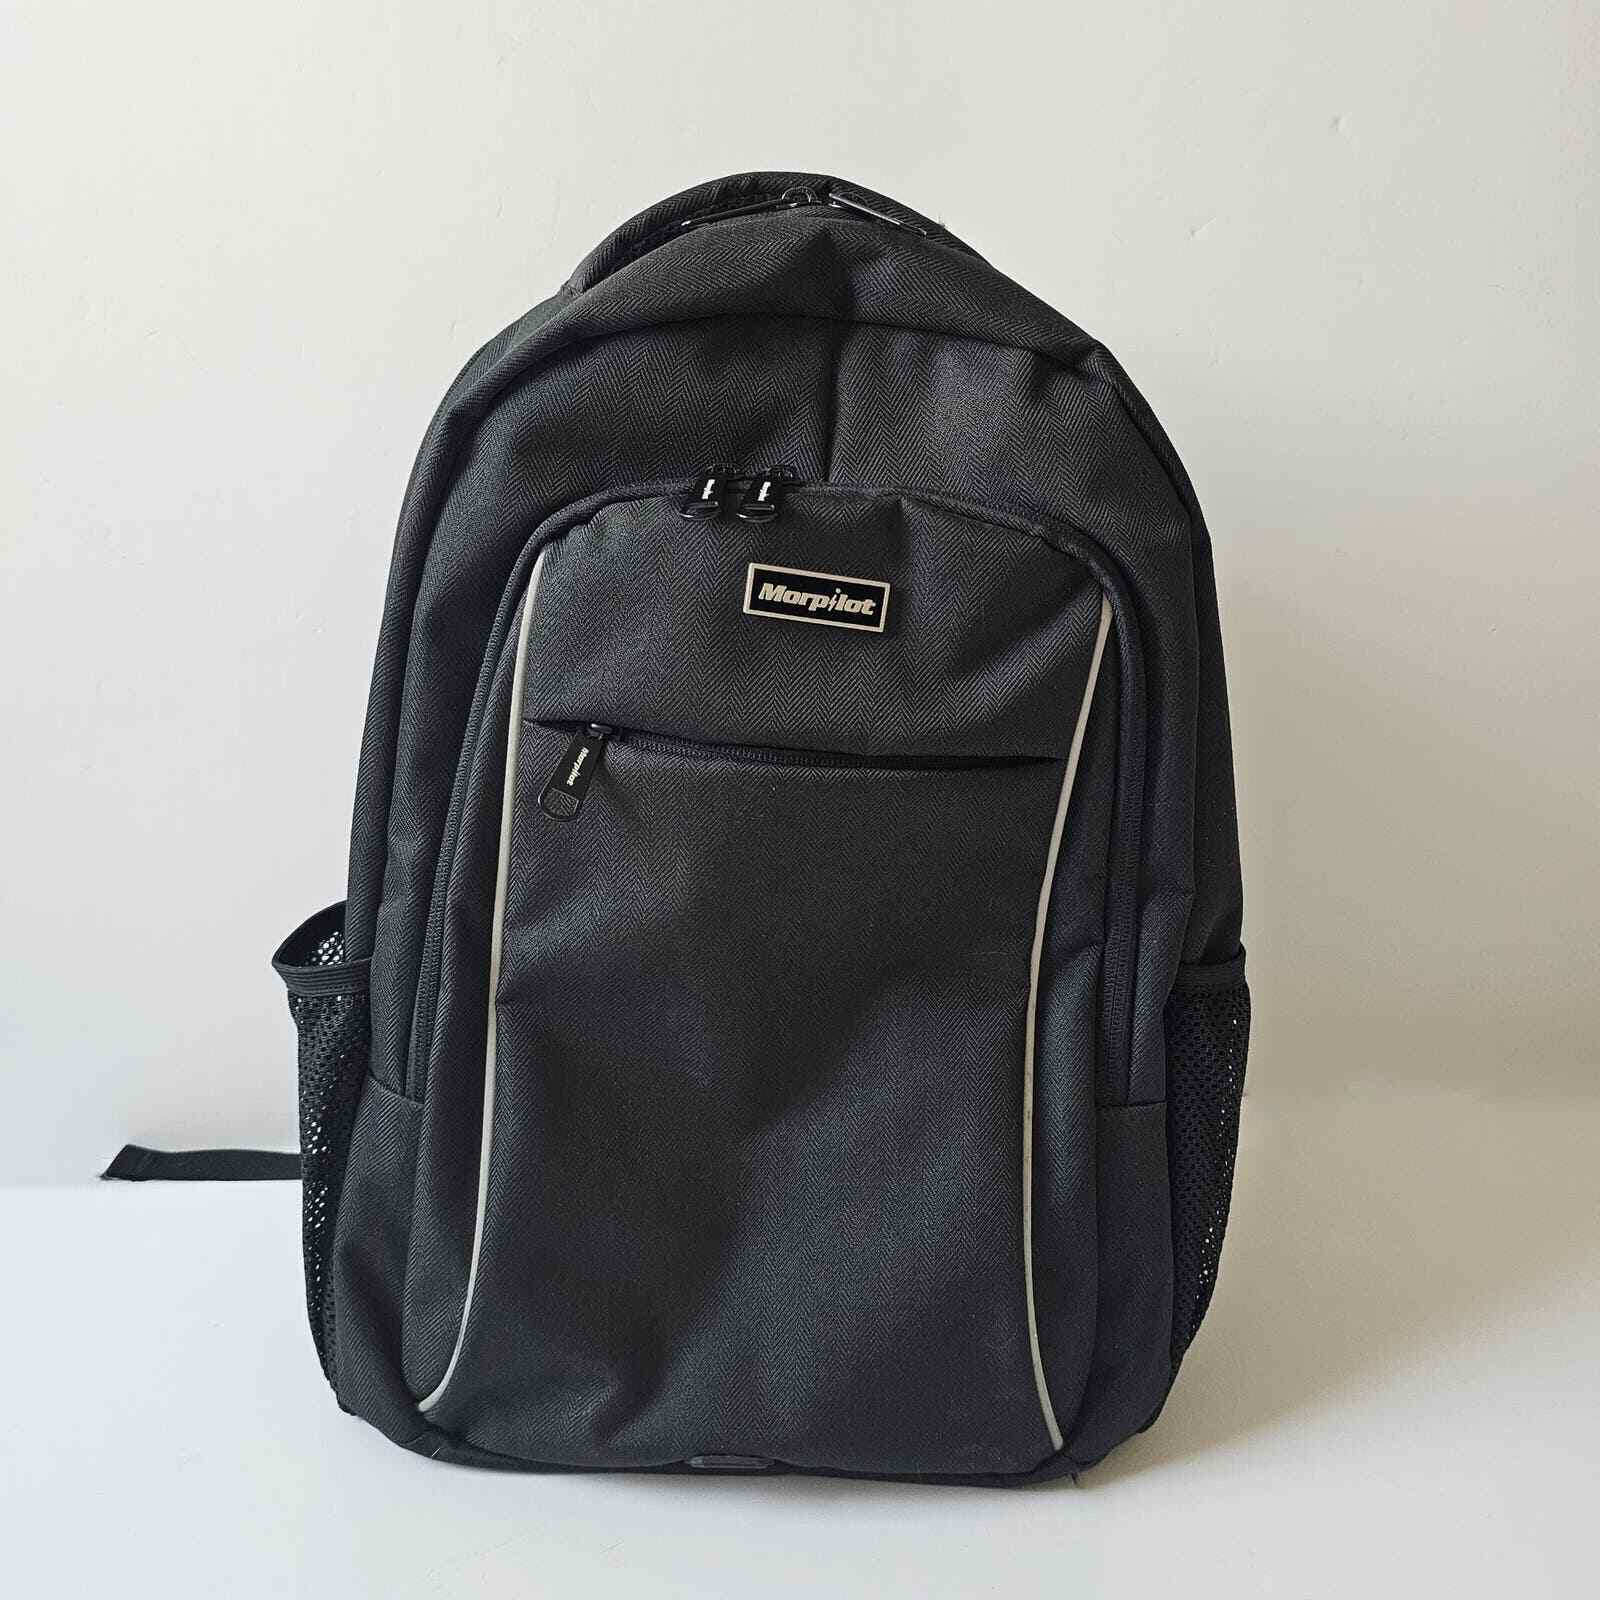 Morpilot Backpack Travel Bag Computer Bag Extra Large Back to School